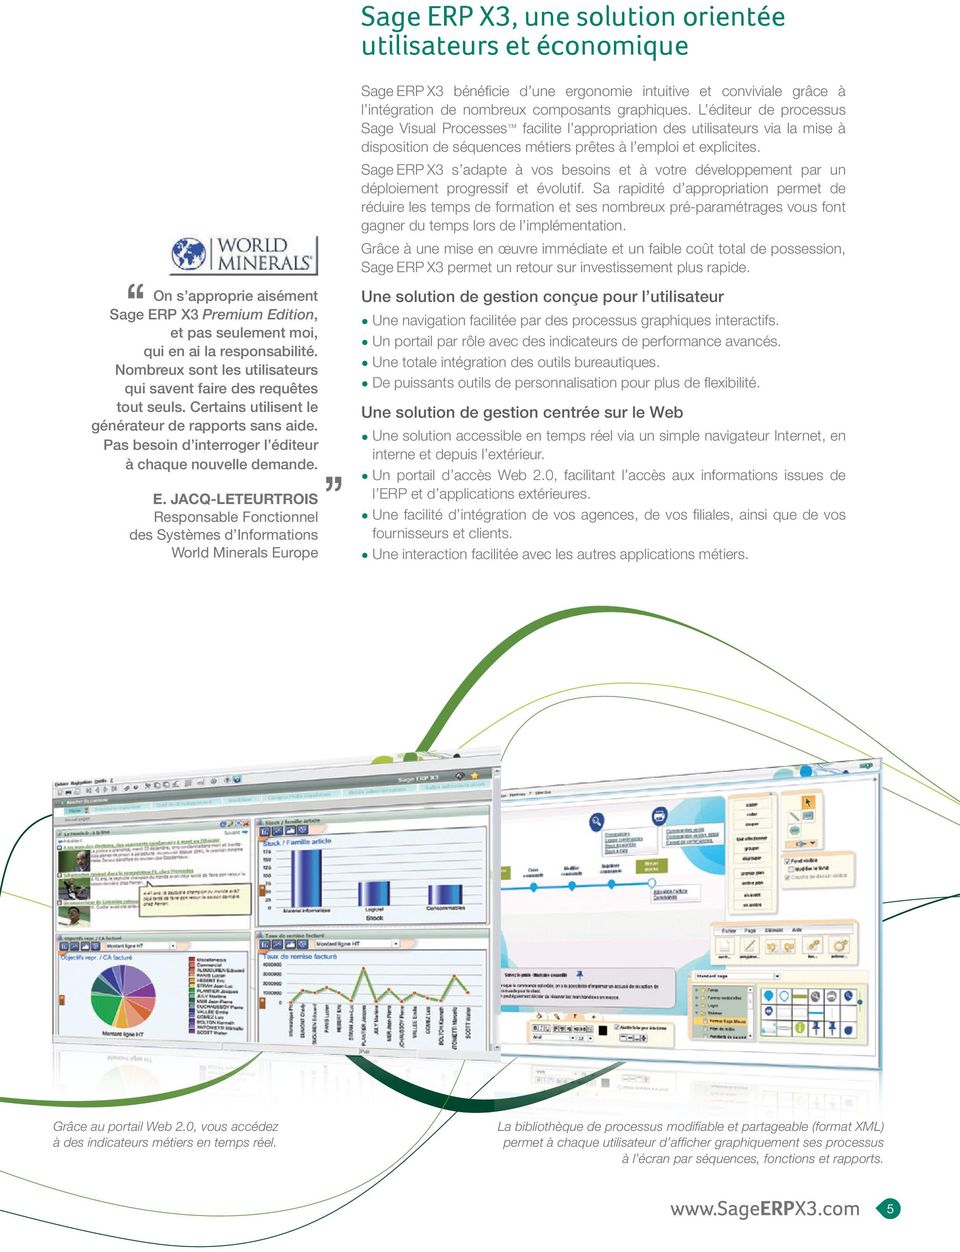 JACQ-LETEURTROIS Responsable Fonctionnel des Systèmes d Informations World Minerals Europe Sage ERP X3 bénéficie d une ergonomie intuitive et conviviale grâce à l intégration de nombreux composants